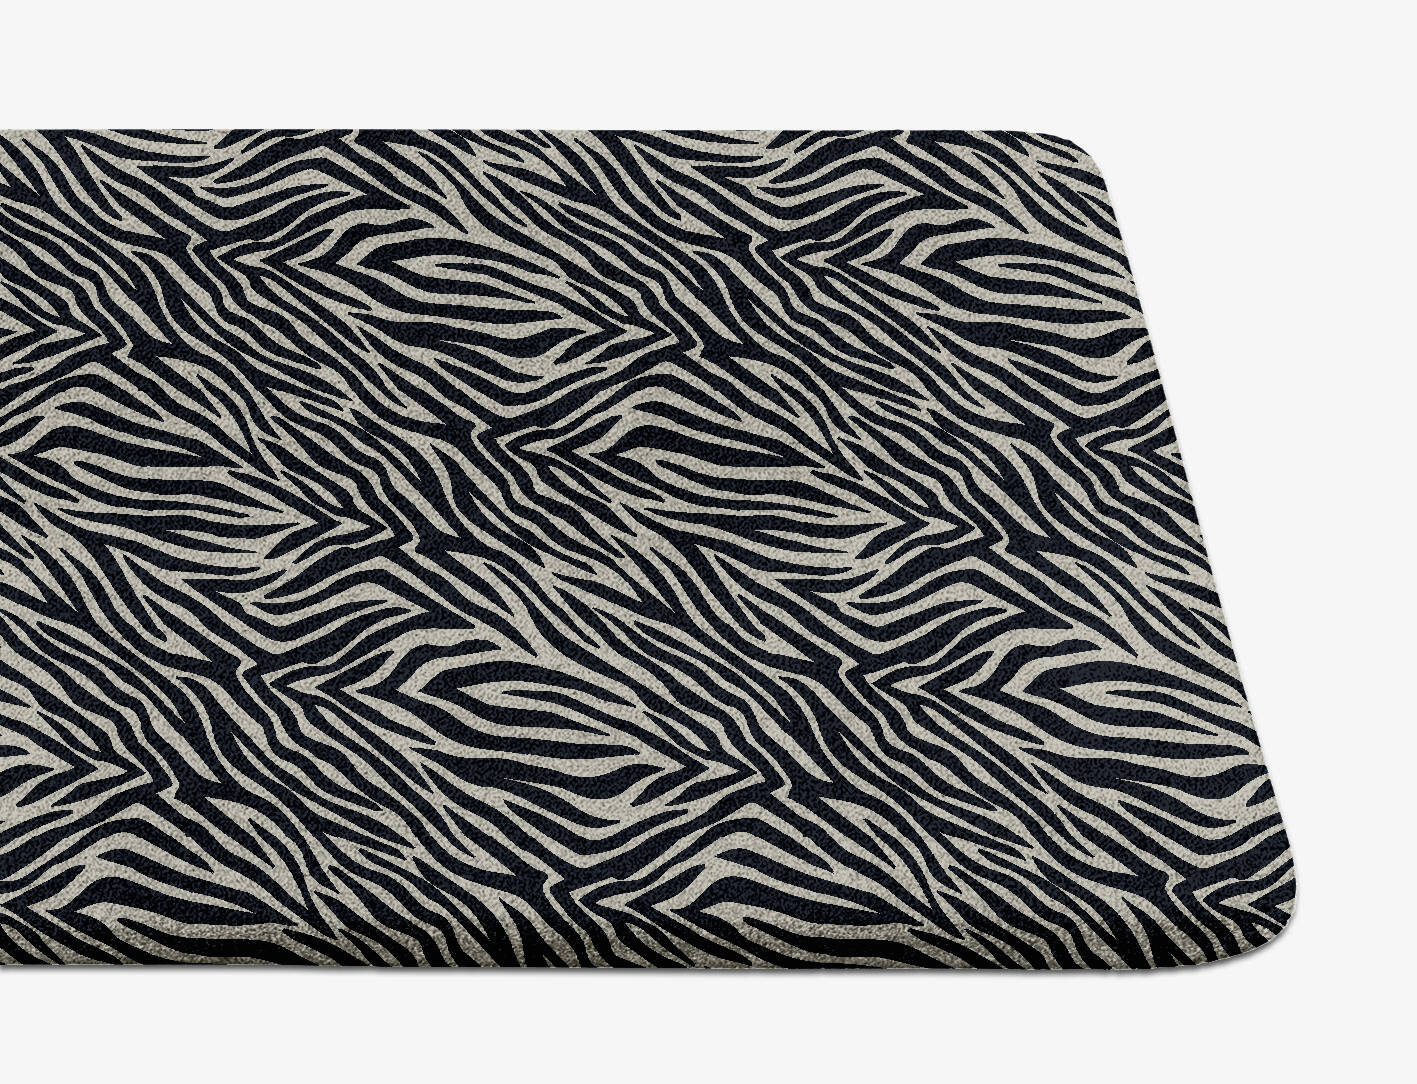 Zebra Hide Animal Prints Runner Hand Tufted Pure Wool Custom Rug by Rug Artisan